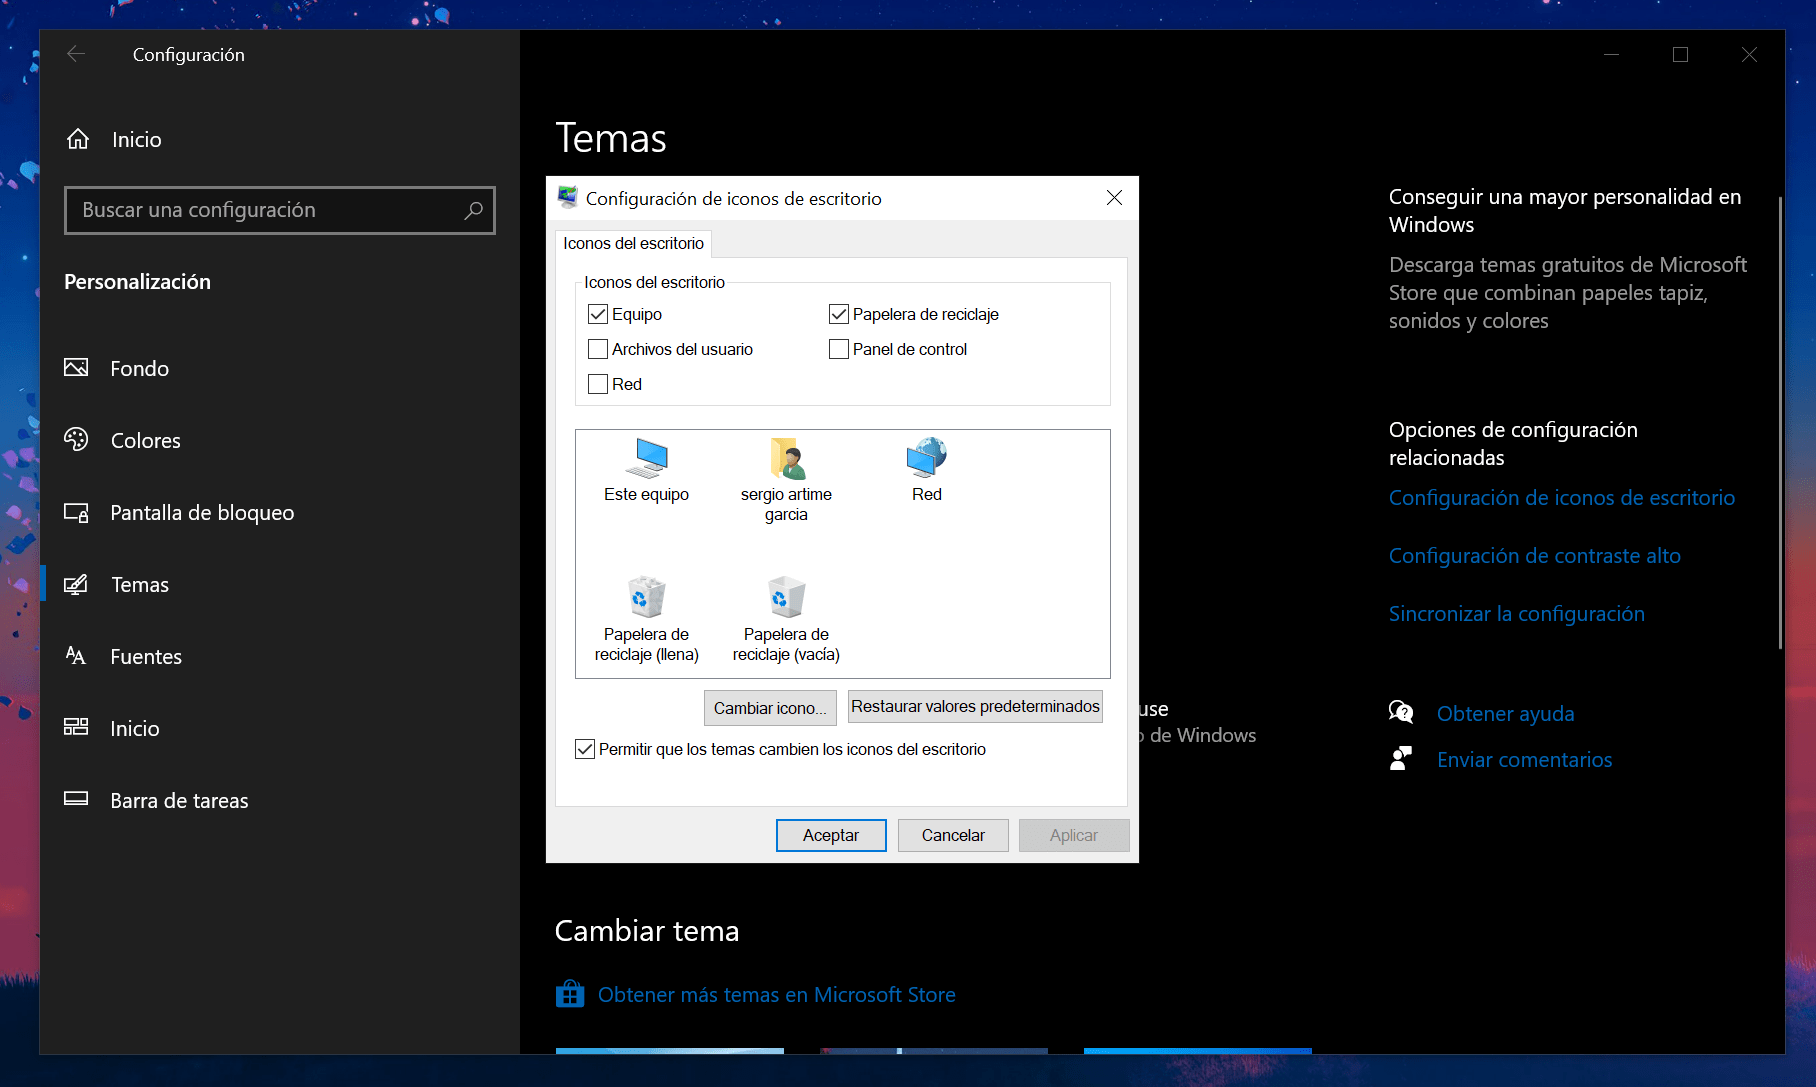 Así se muestra la configuración de iconos en Windows 10